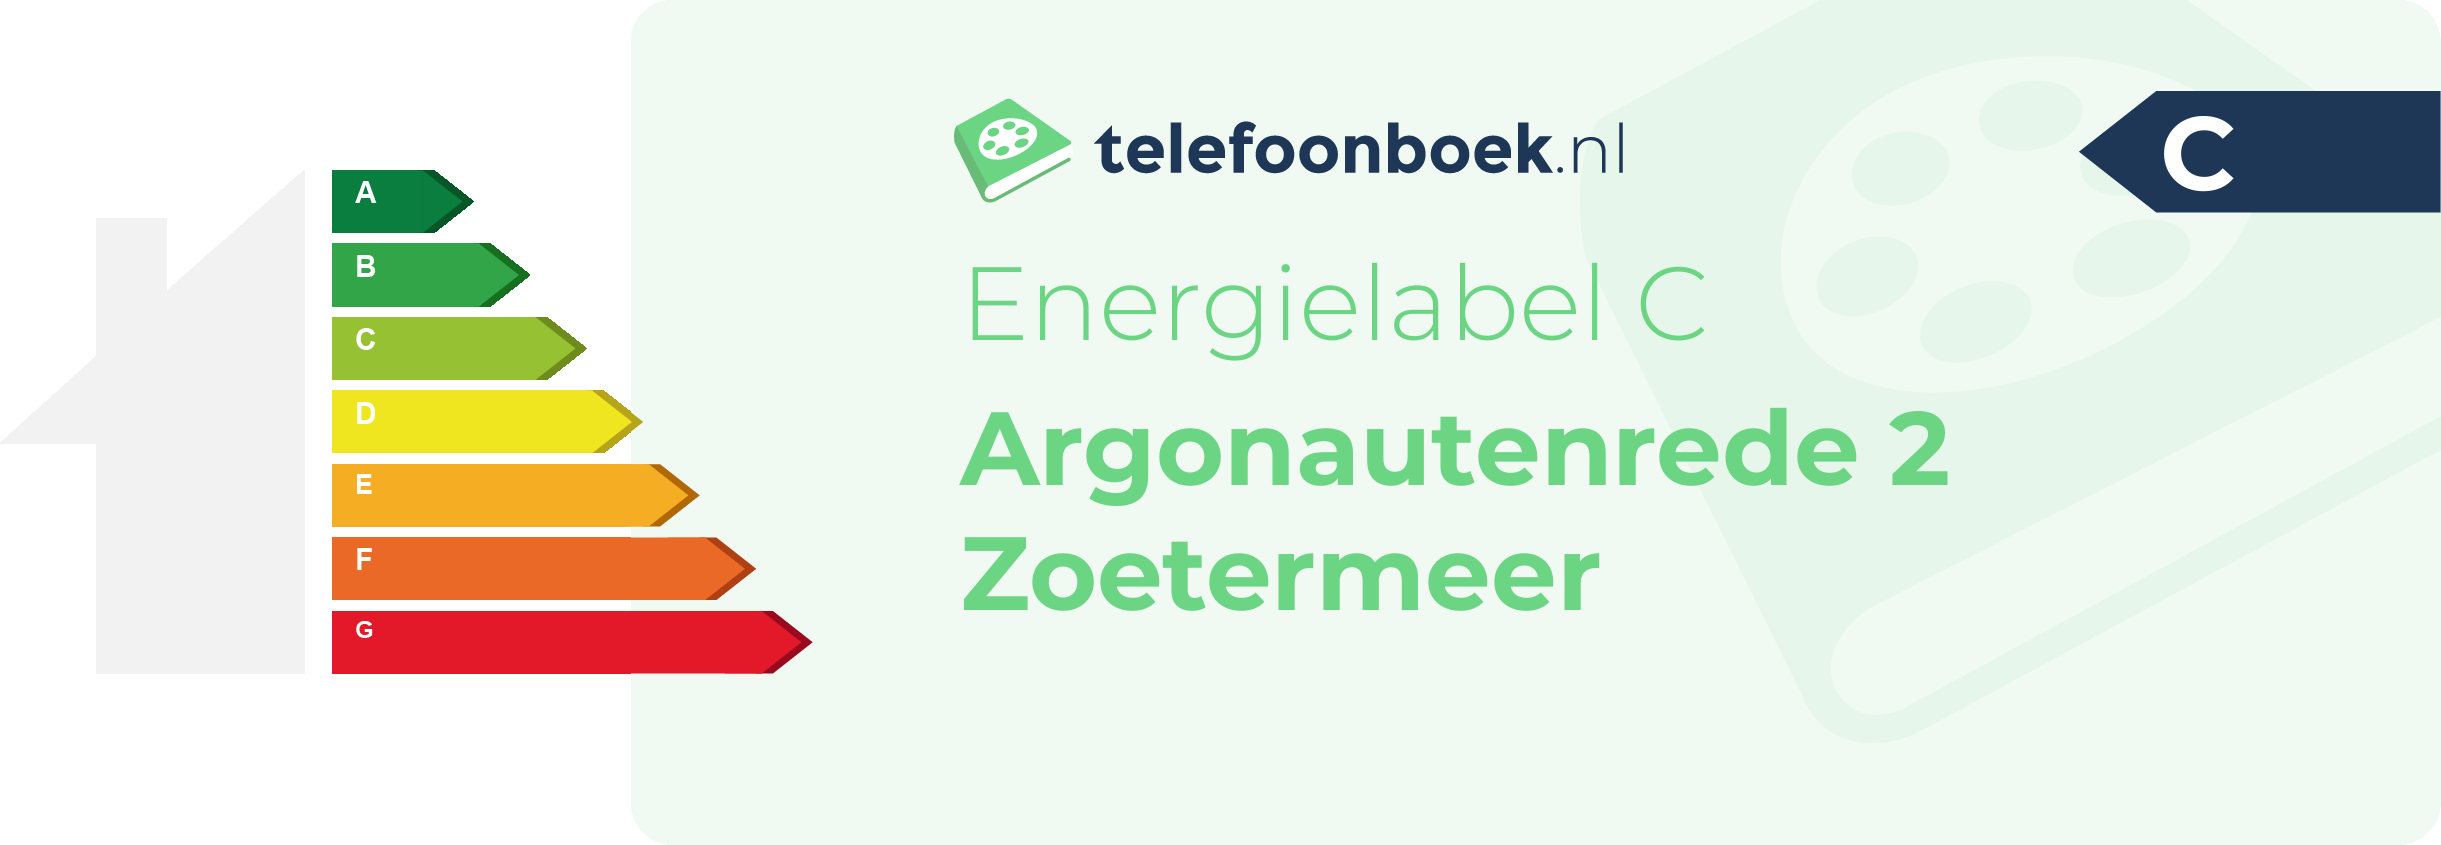 Energielabel Argonautenrede 2 Zoetermeer